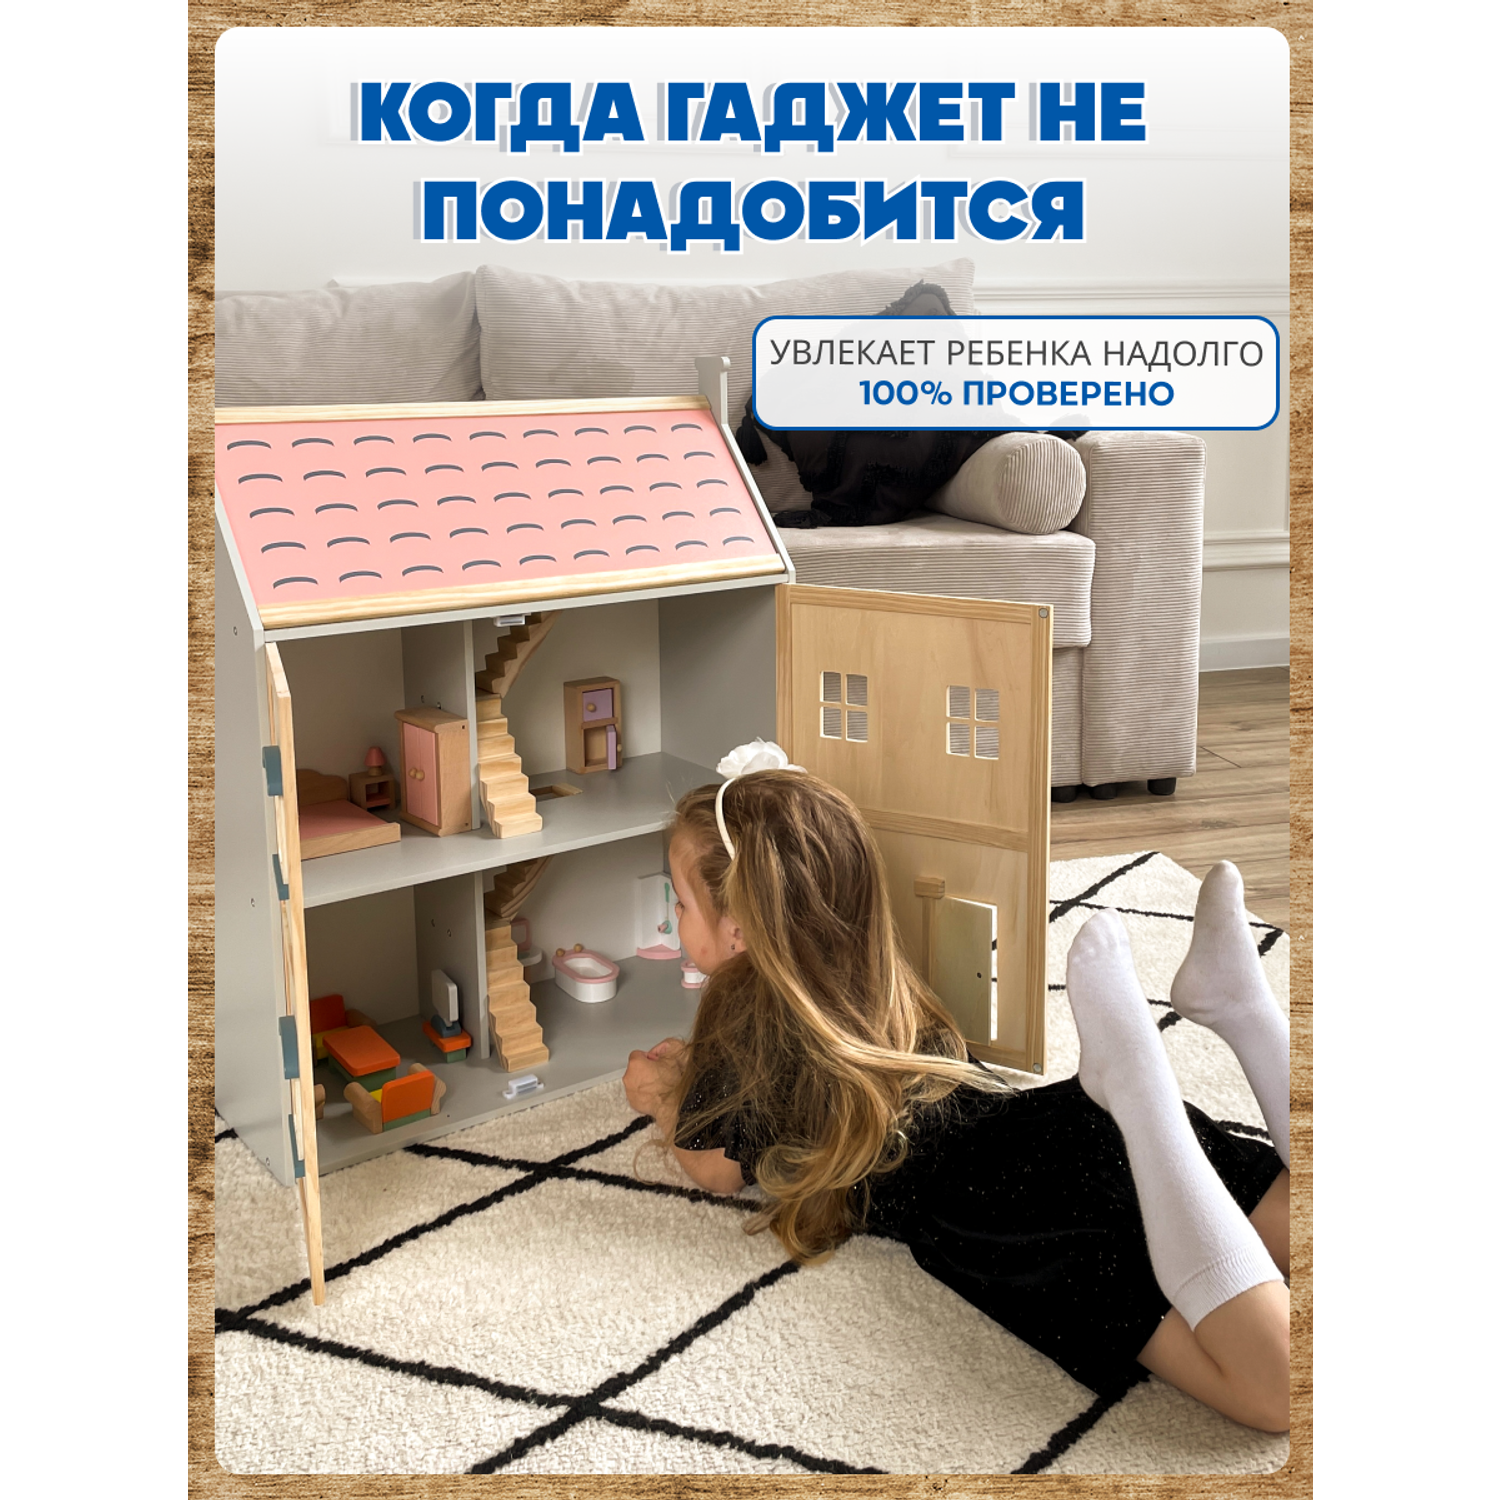 Кукольный домик Зайка любит Большой кукольный домик с мебелью из натурального дерева для кукол 2 этажа MSN21021 - фото 16